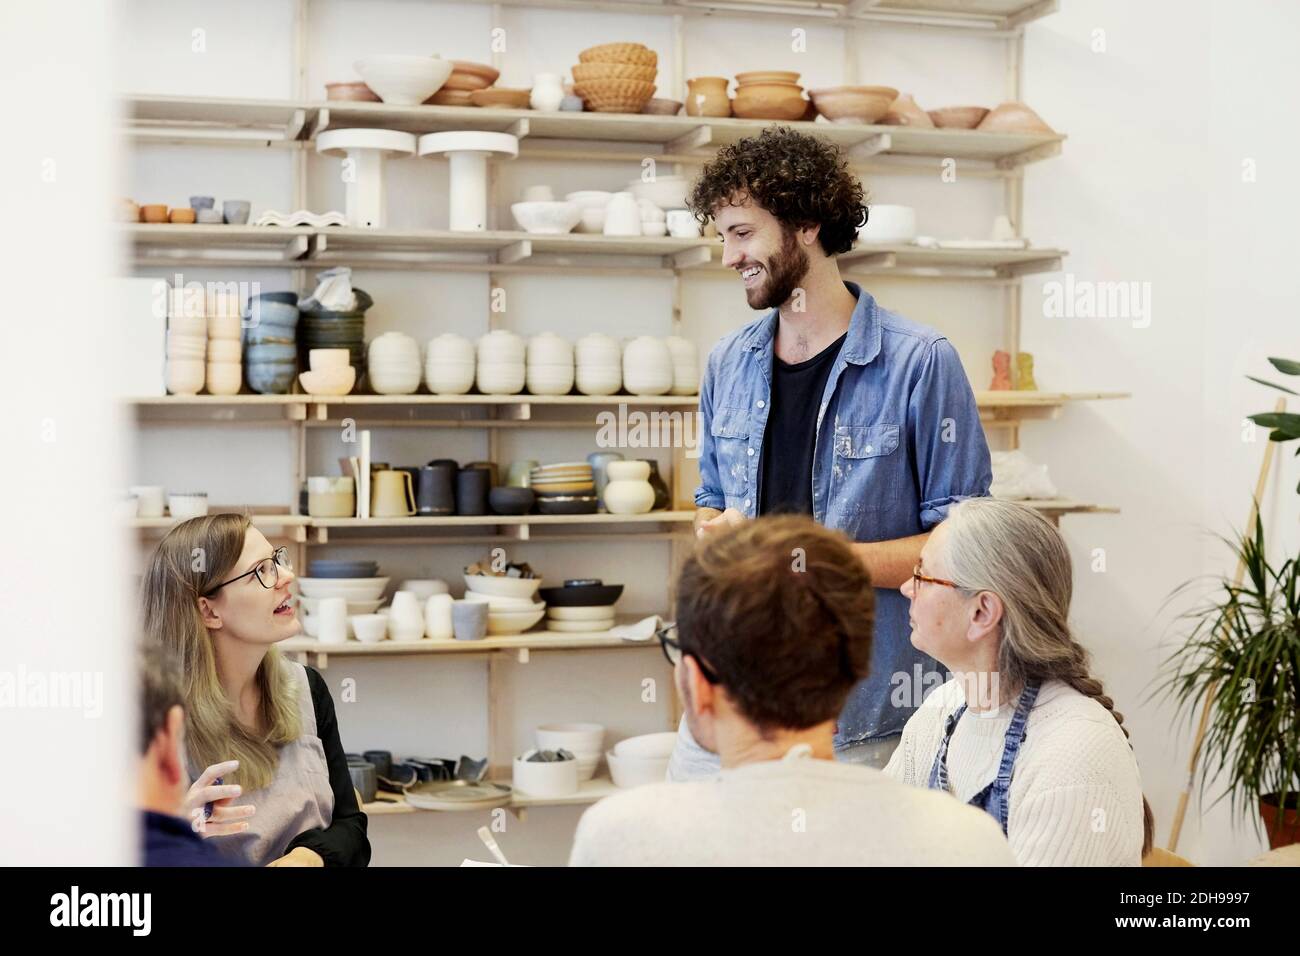 Homme souriant parlant avec une femme en cours d'art Banque D'Images